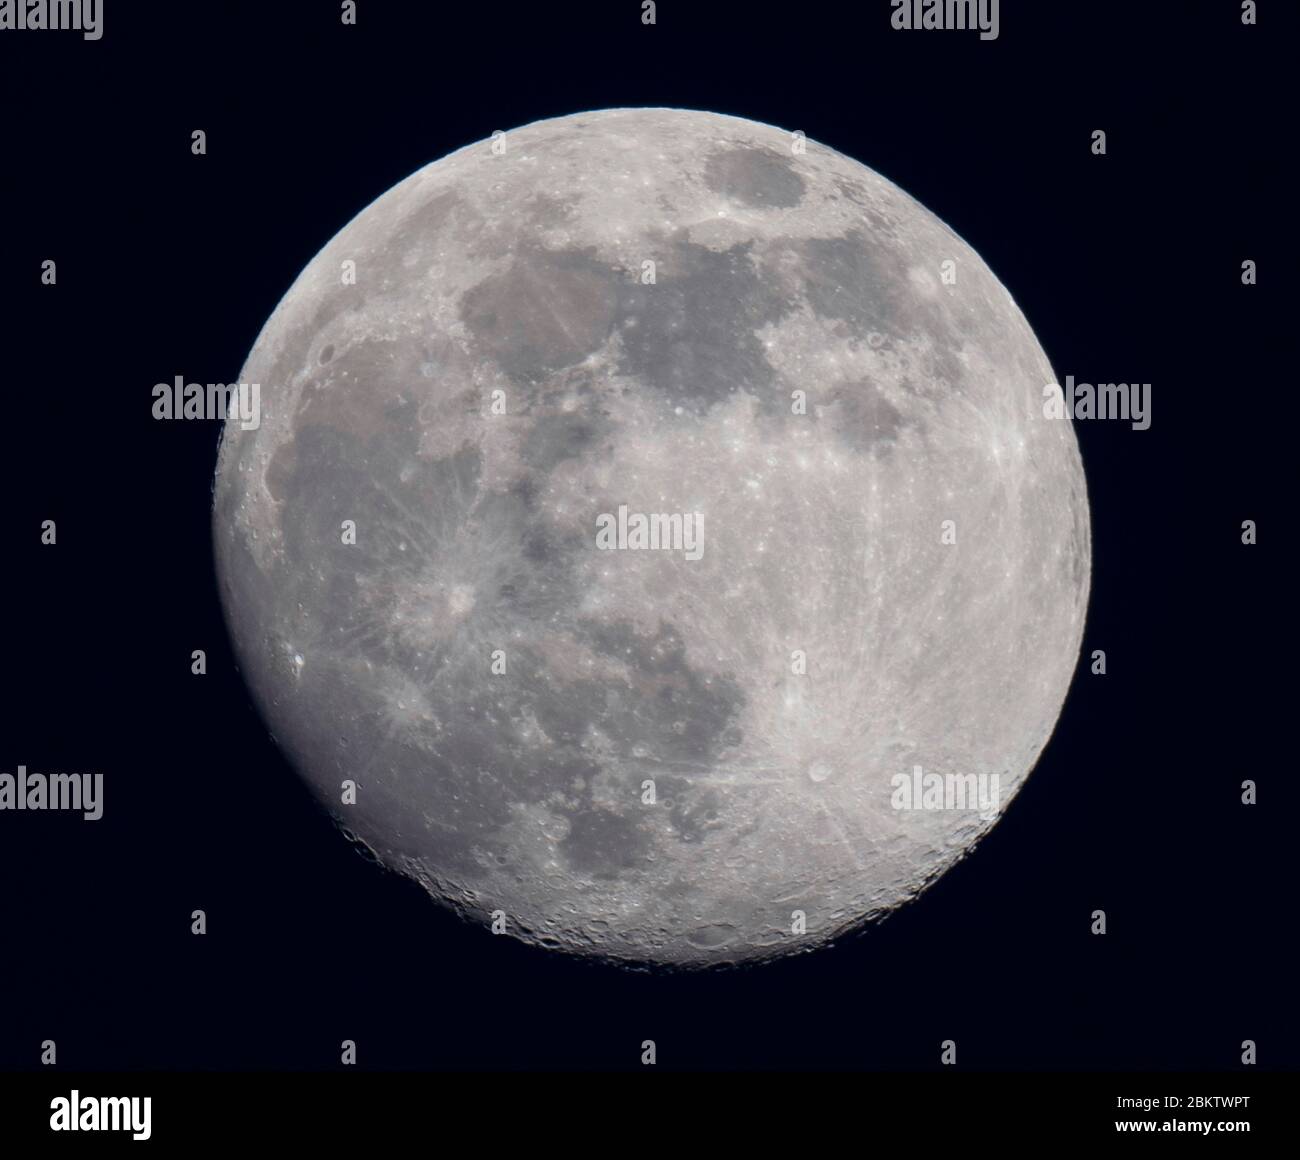 Londra, Regno Unito. 5 maggio 2020. Waxing gibbous Moon fase contro il cielo sera scuro due giorni prima dell'ultima Supermoon del 2020. Credit: Malcolm Park/Alamy Live News. Foto Stock